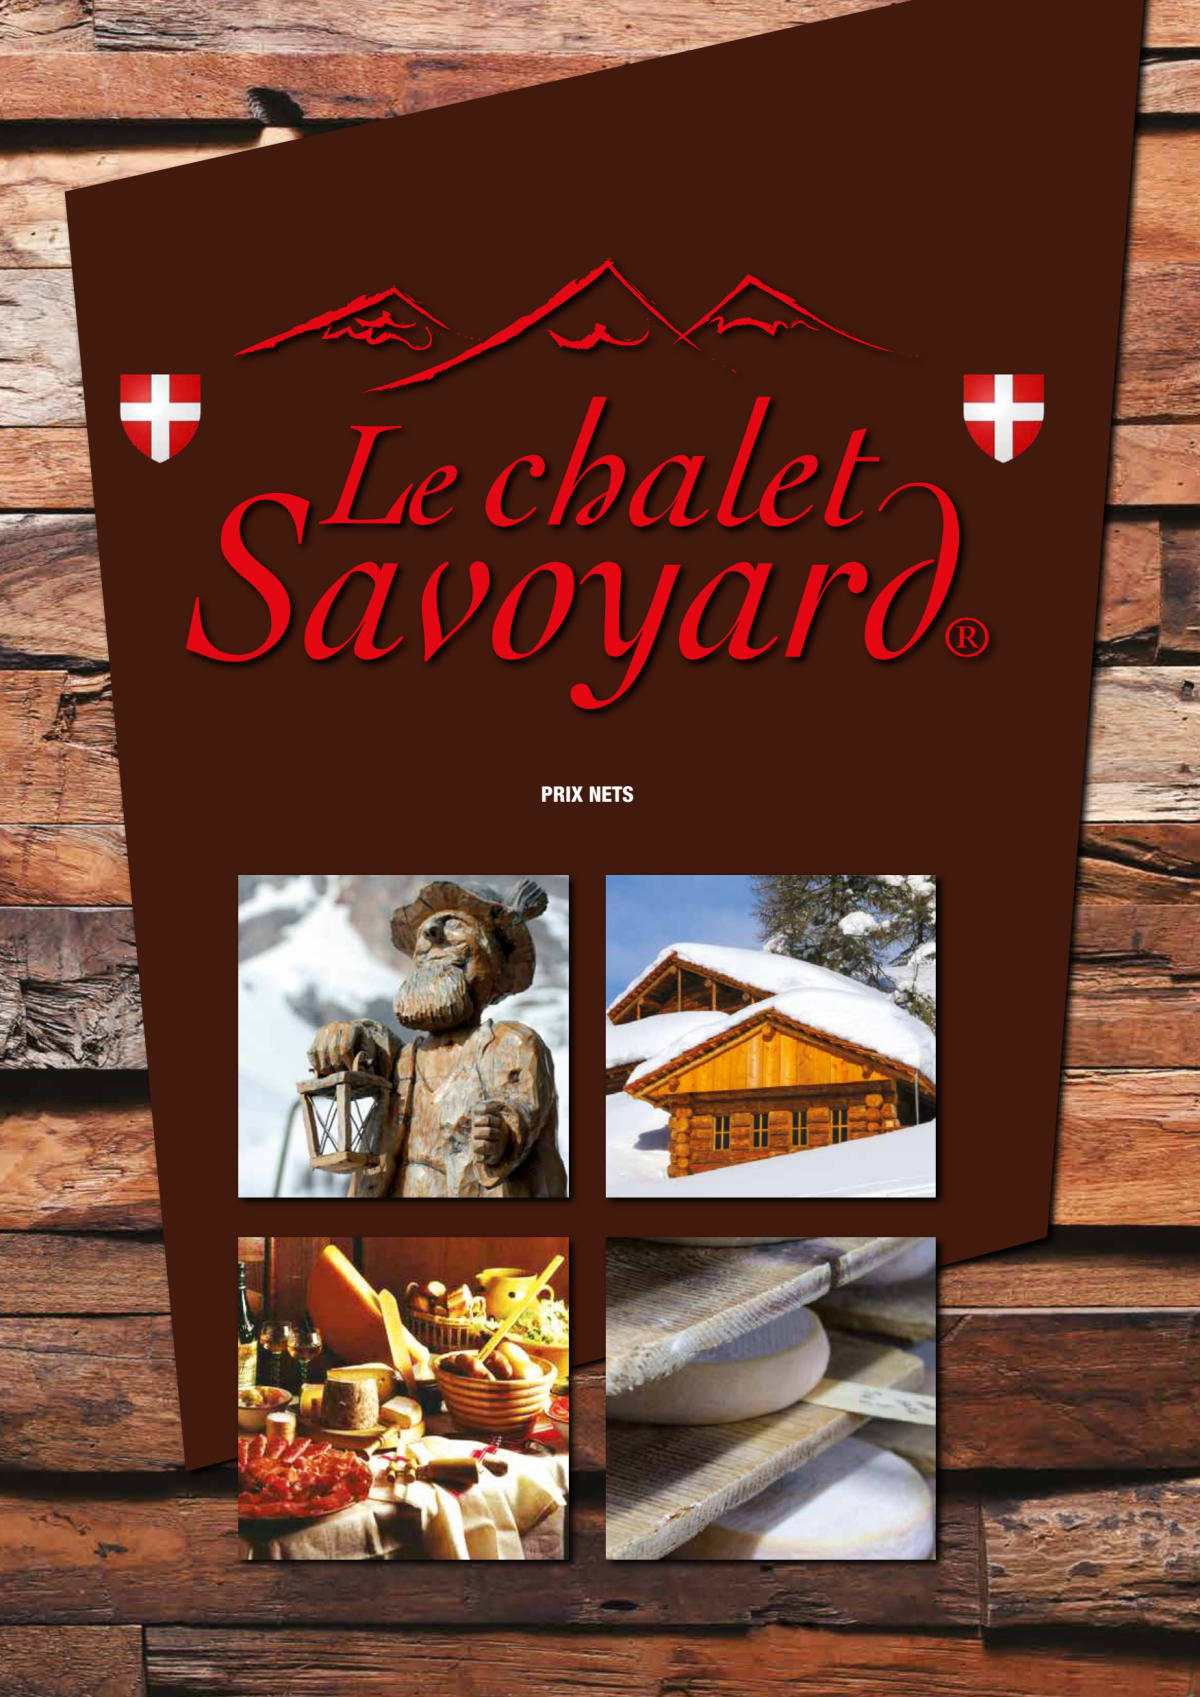 Le Chalet Savoyard menu